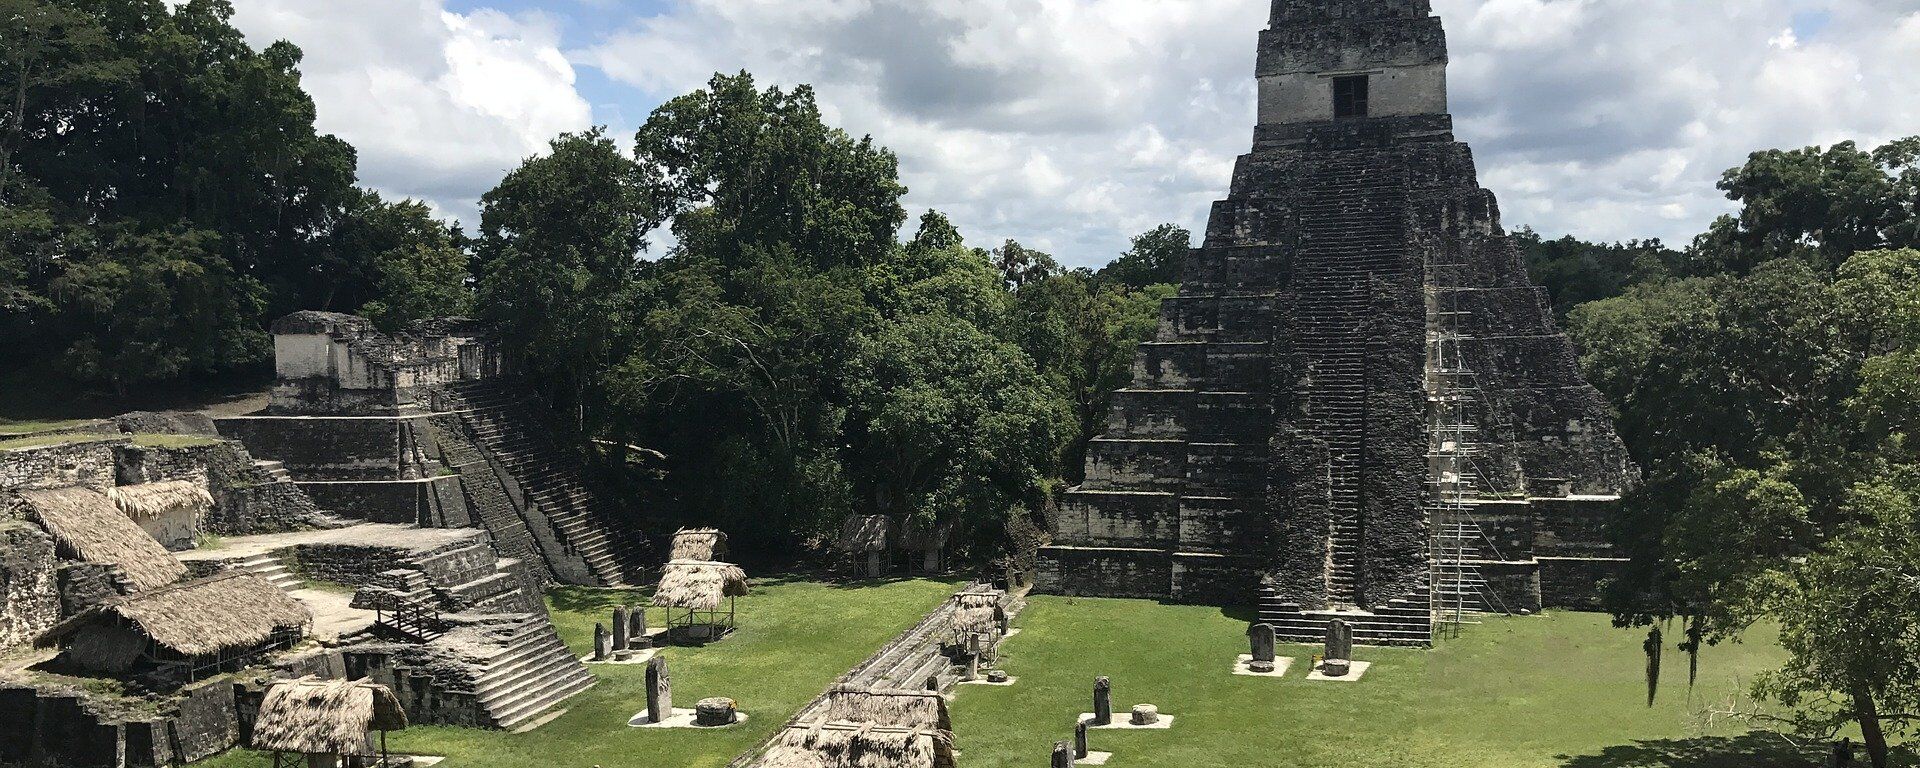 La antigua ciudad maya de Tikal, en Guatemala - Sputnik Mundo, 1920, 23.10.2020